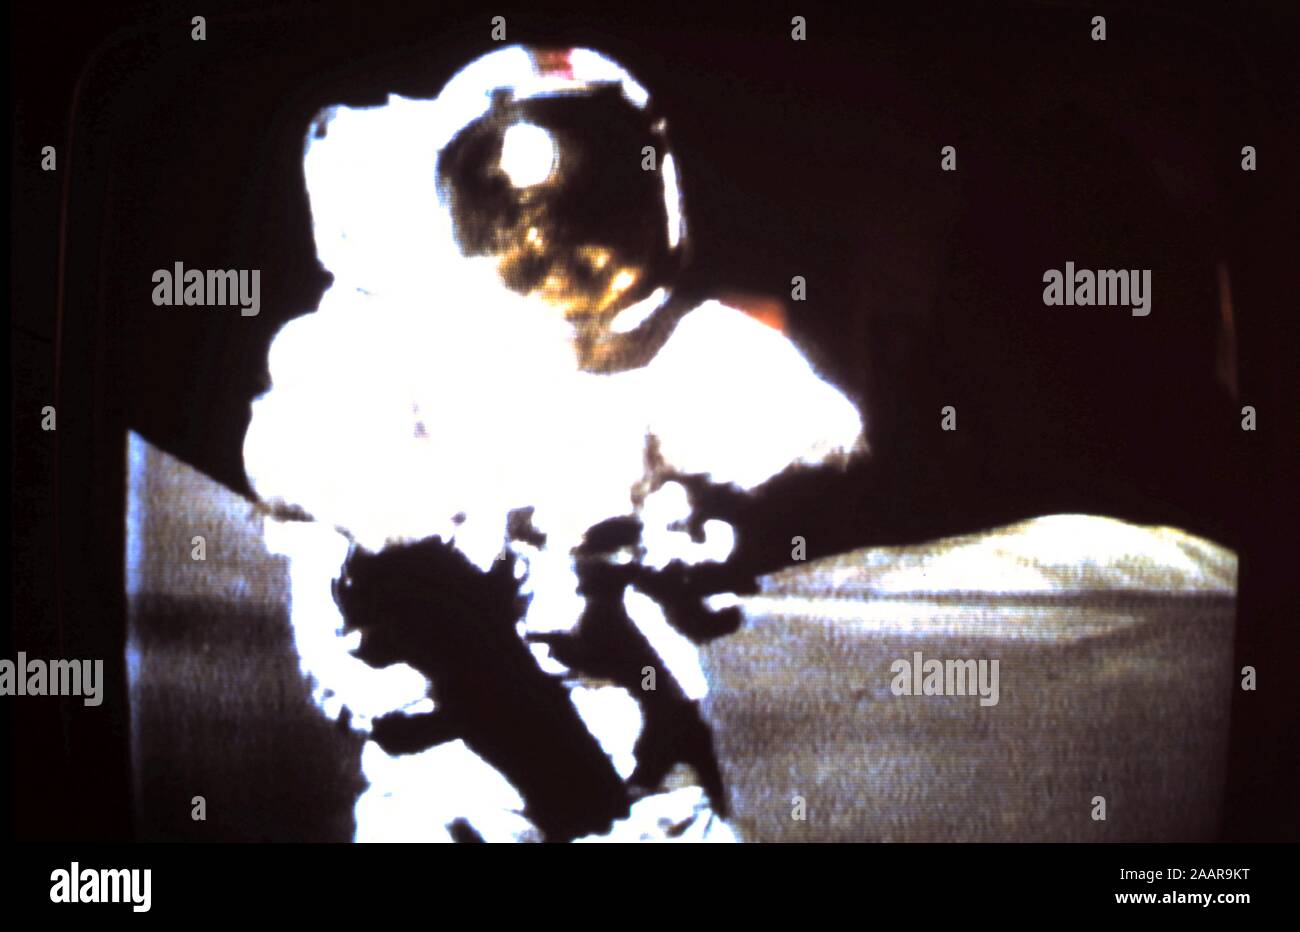 Teleclip - Last man on the Moon, Gene Cernan, Apollo 17 Moon Landing, photograph taken directly from TV screen circa 1972 Stock Photo